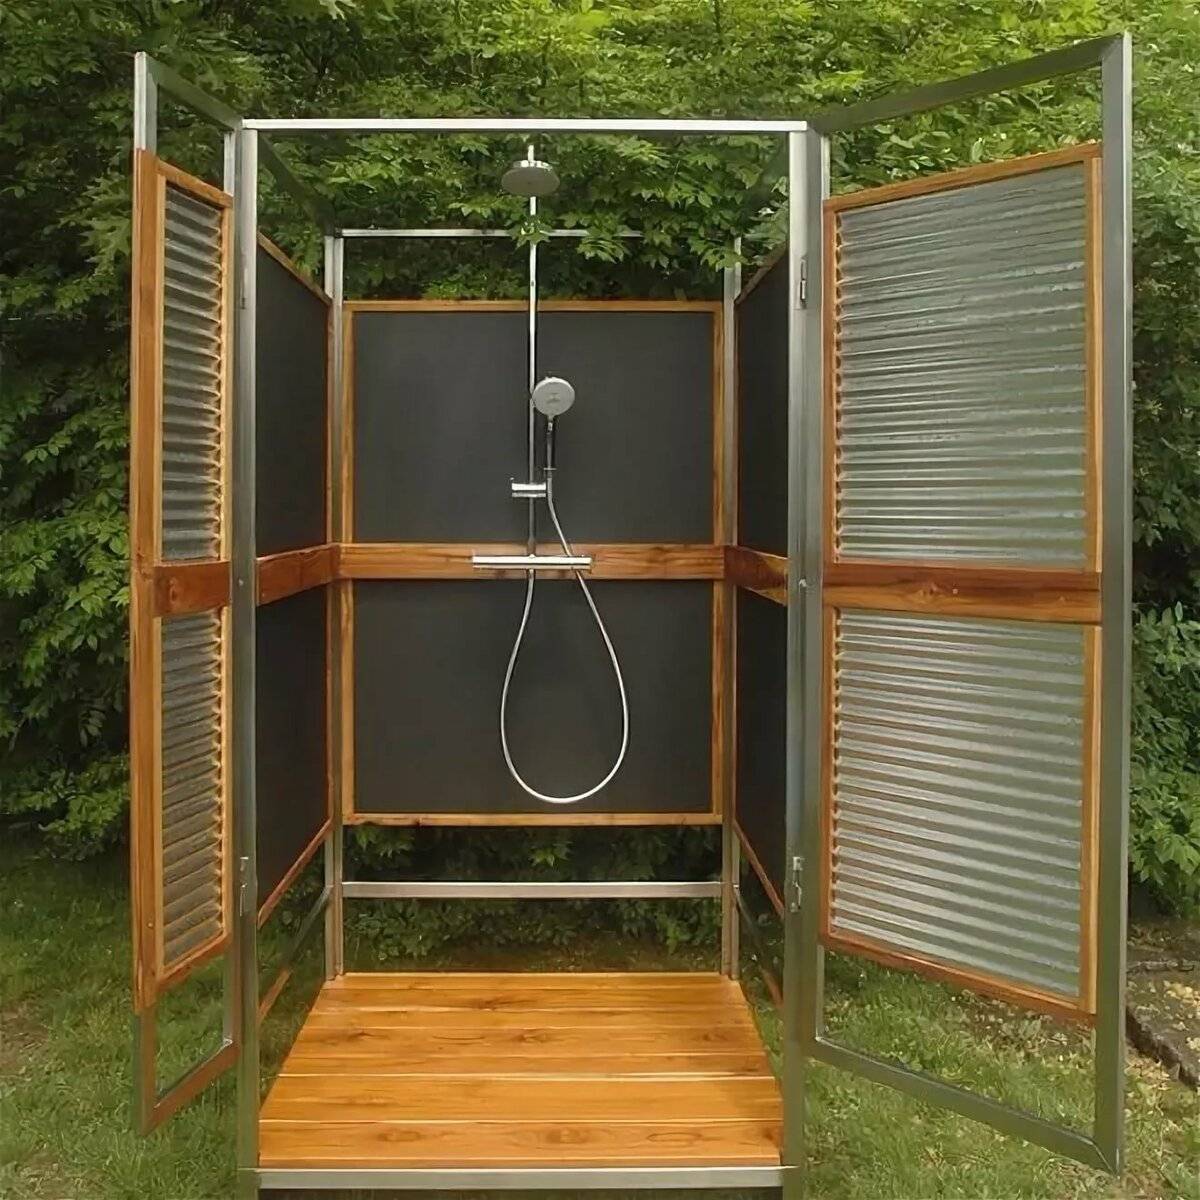 Как построить летний душ на даче своими руками поэтапно фото для начинающих